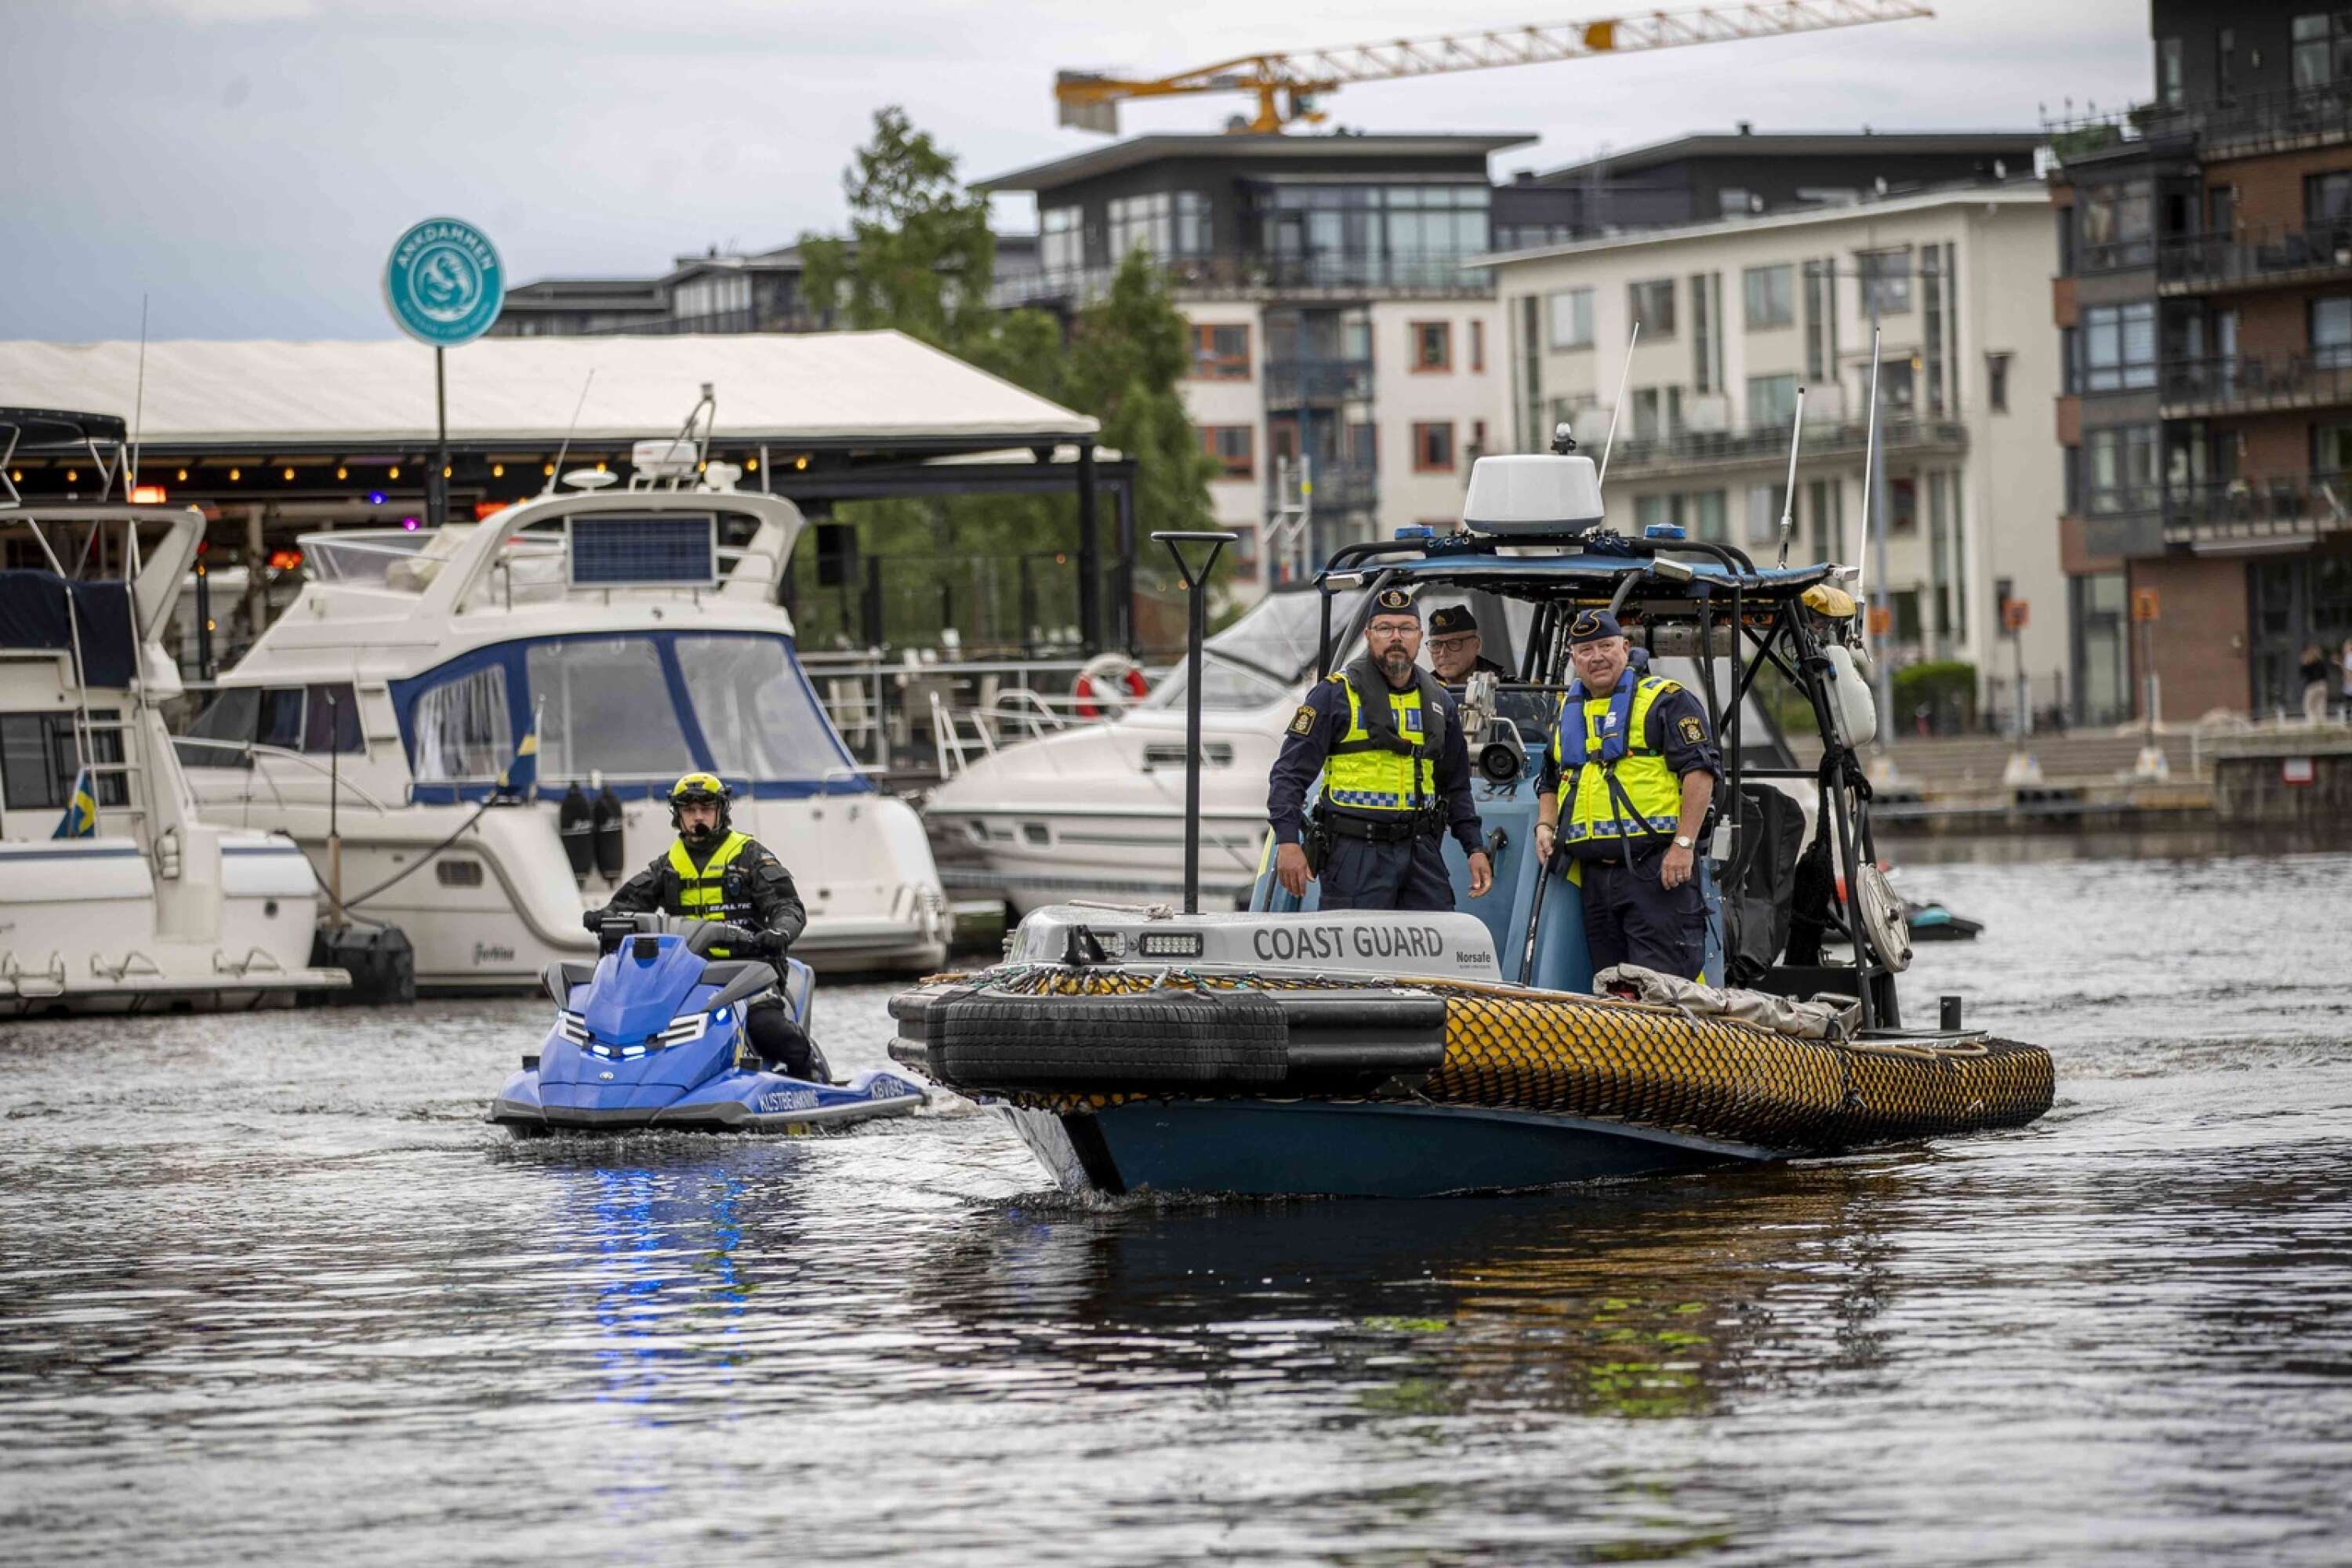 Kustbevakningen på besök i Karlstad sommaren 2021 med vattenskoter och ribbåt för att kontrollera nykterhet och fartbegränsningar.